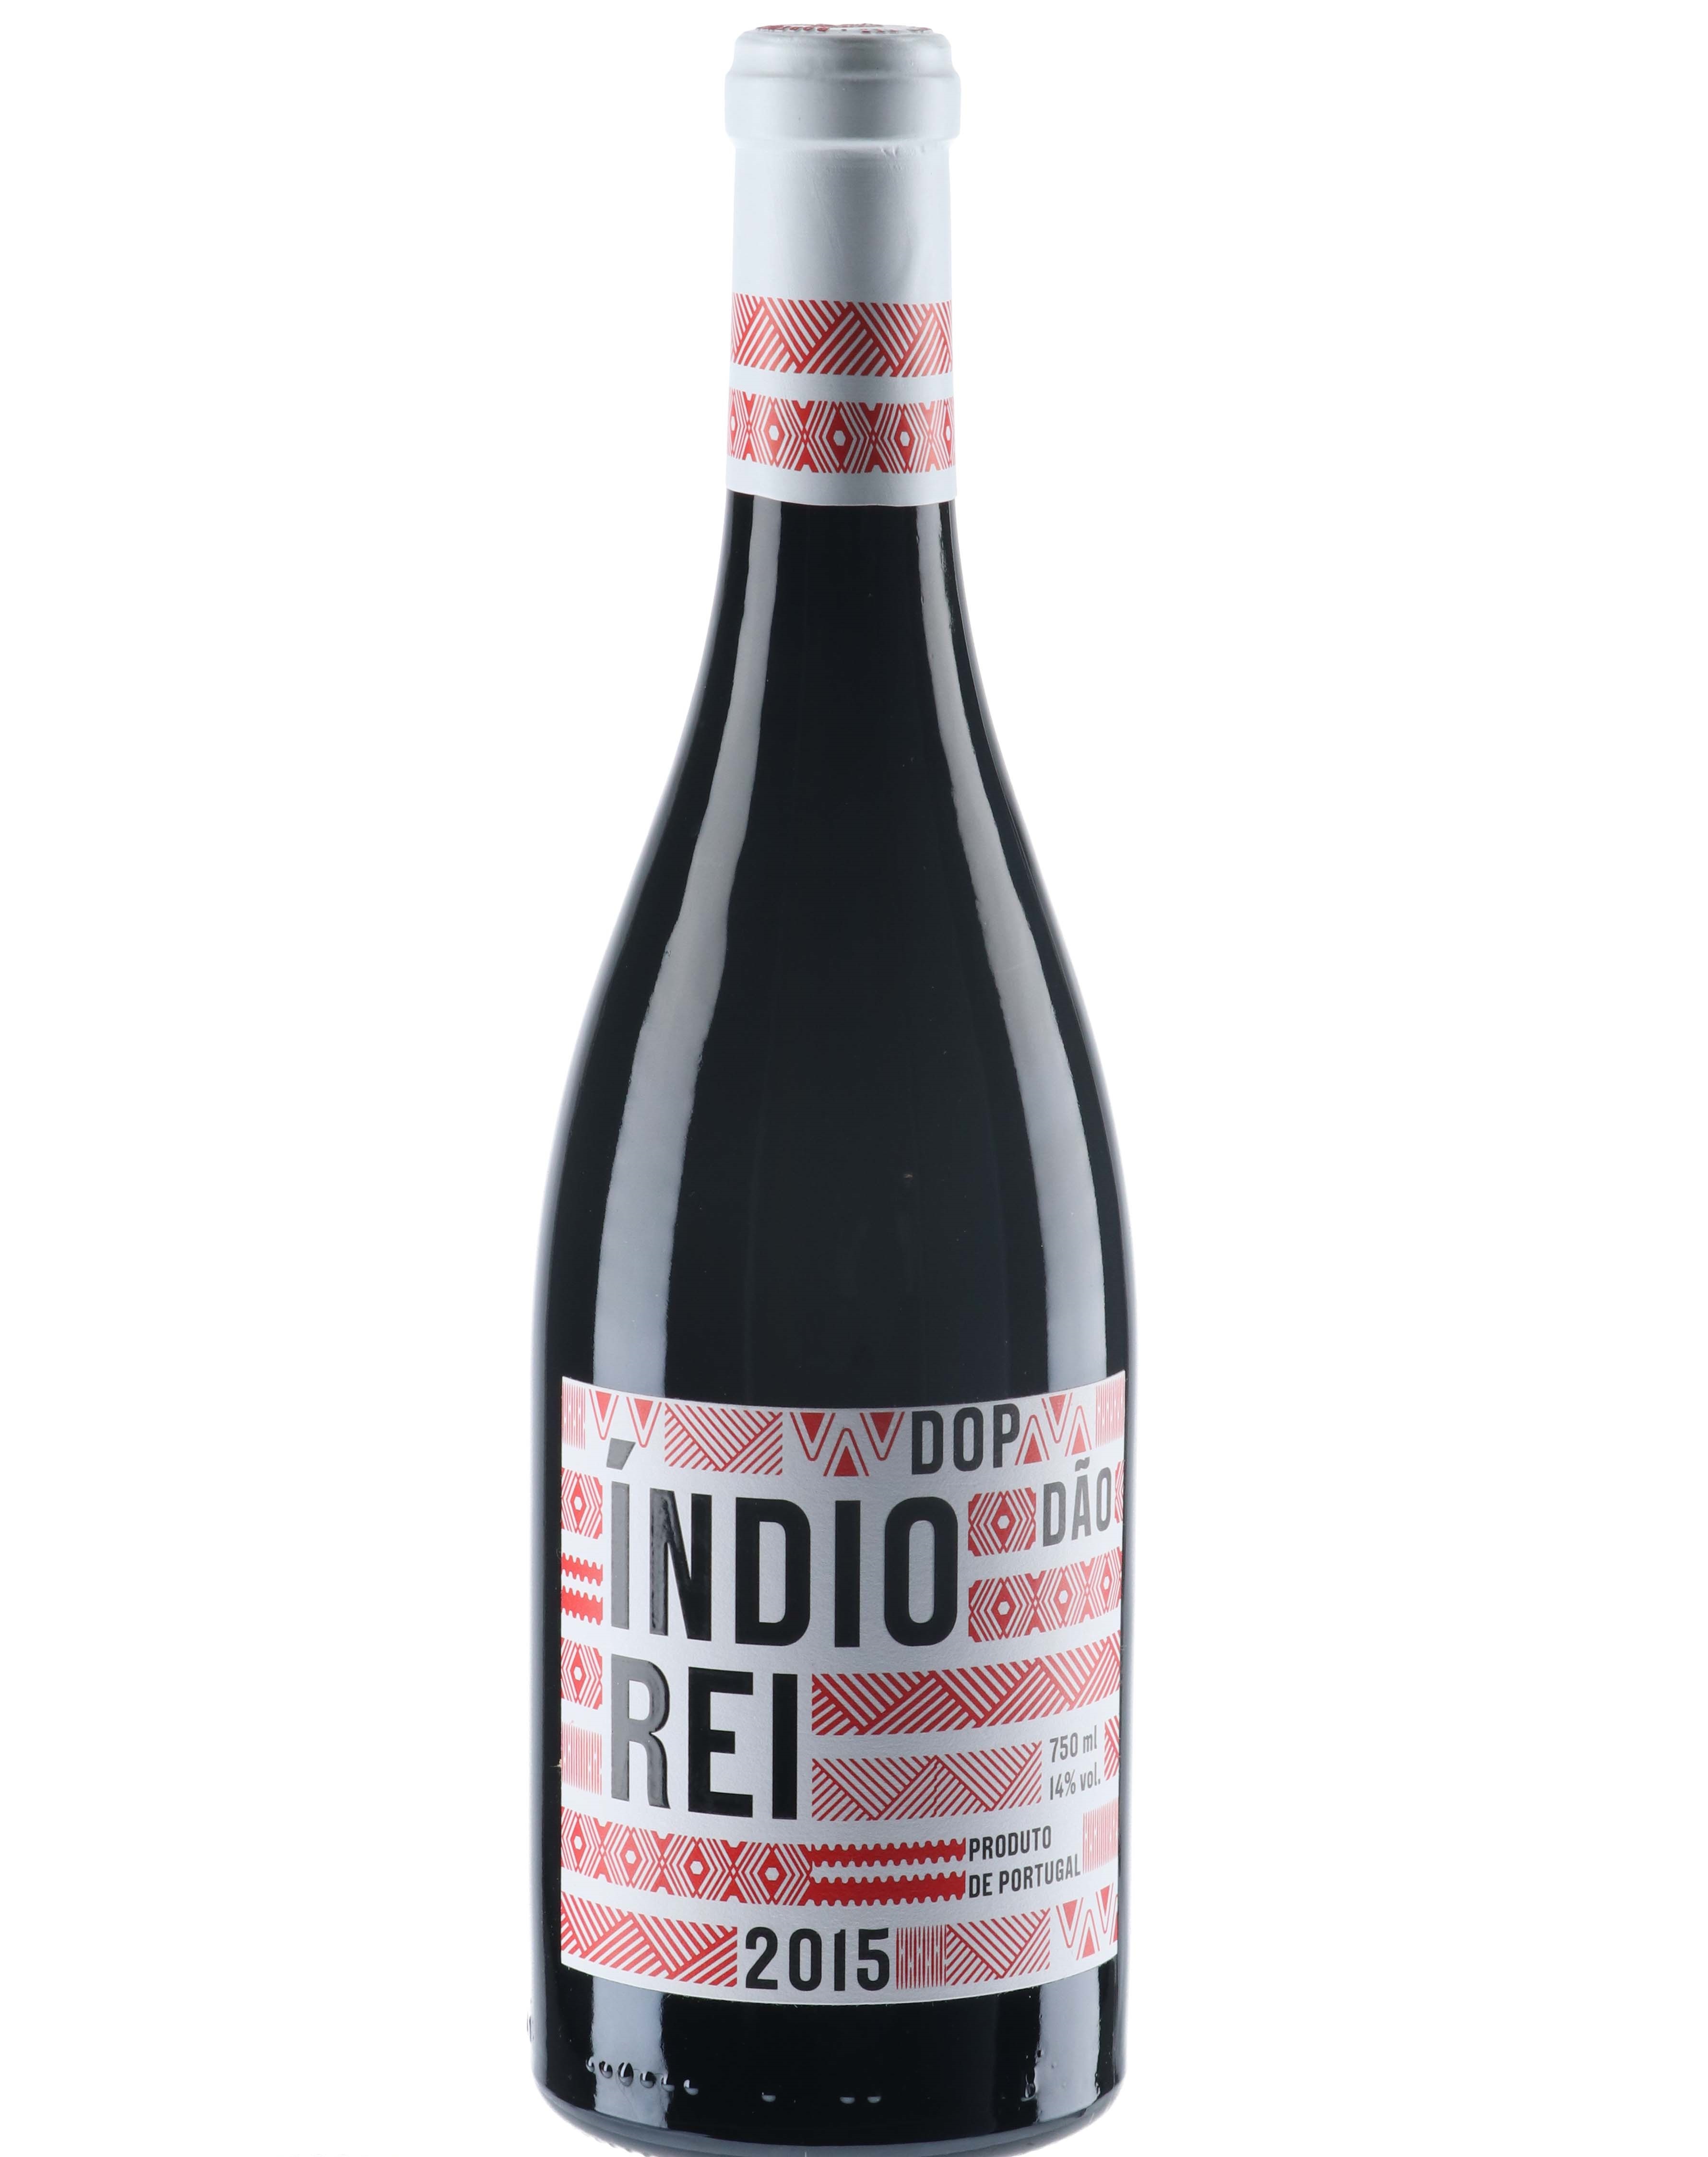 Índio Rei Red Label Grande Reserva 2015 (36,00€ / litro)